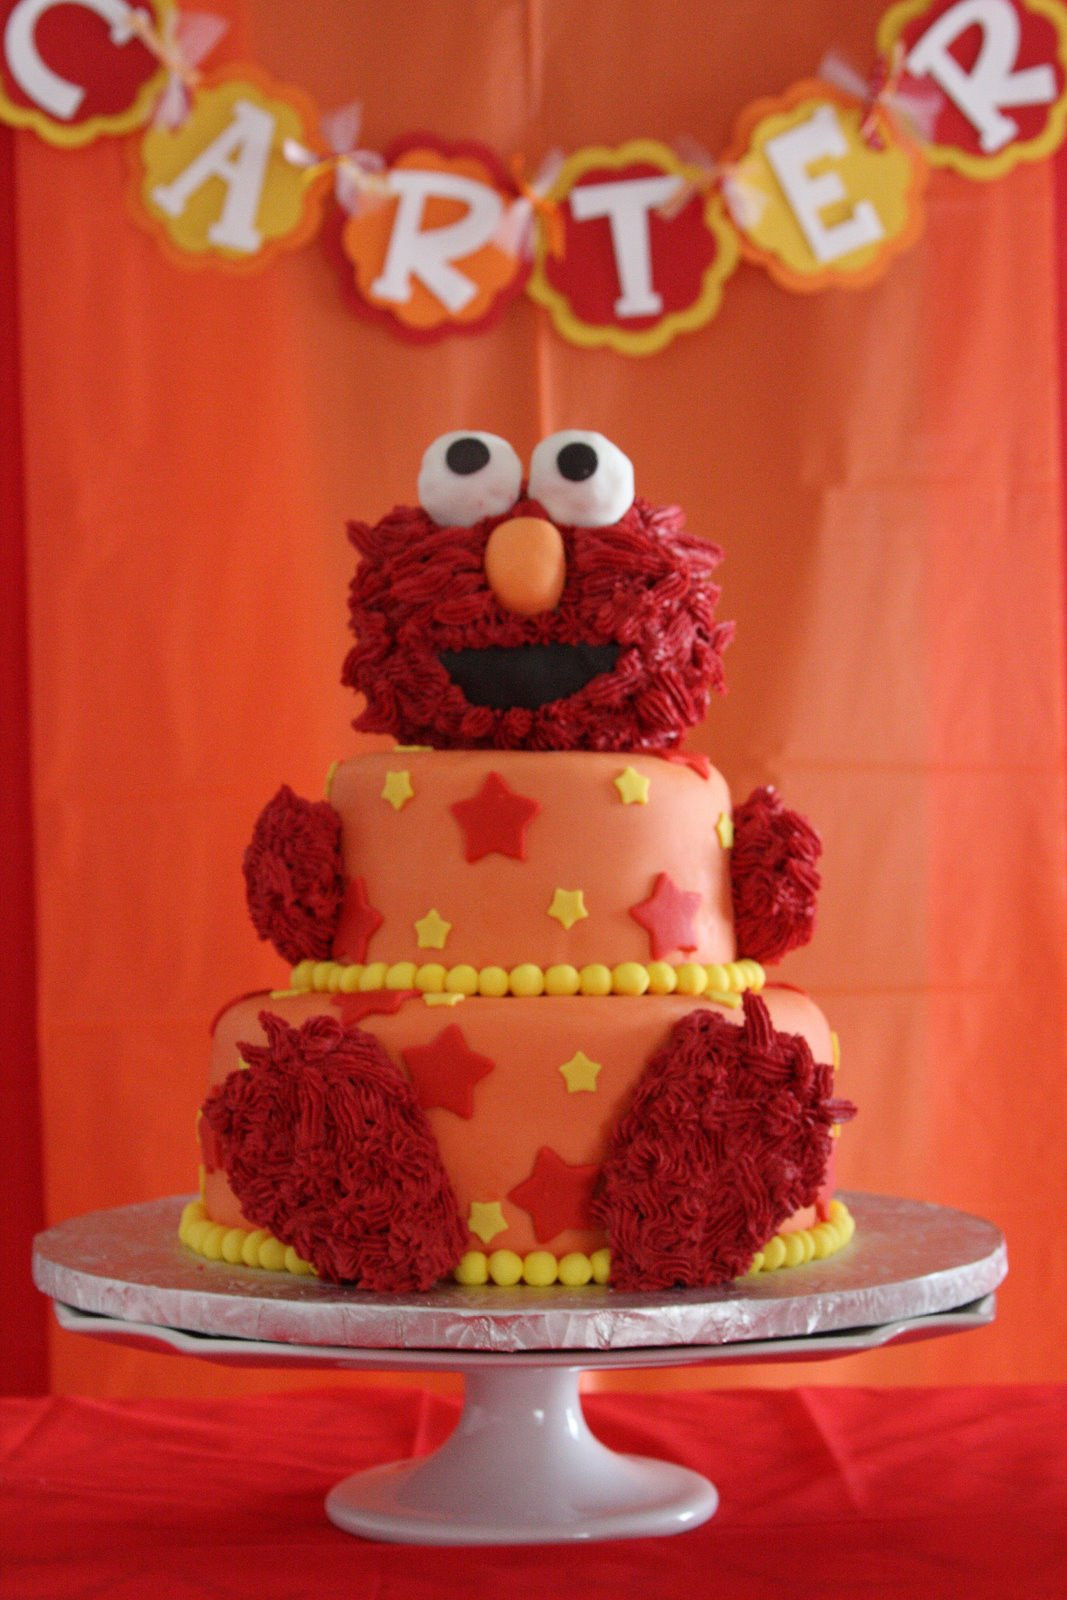 Best ideas about Elmo Birthday Cake
. Save or Pin Melinda Makes Cake Sesame Street Elmo Cake Now.